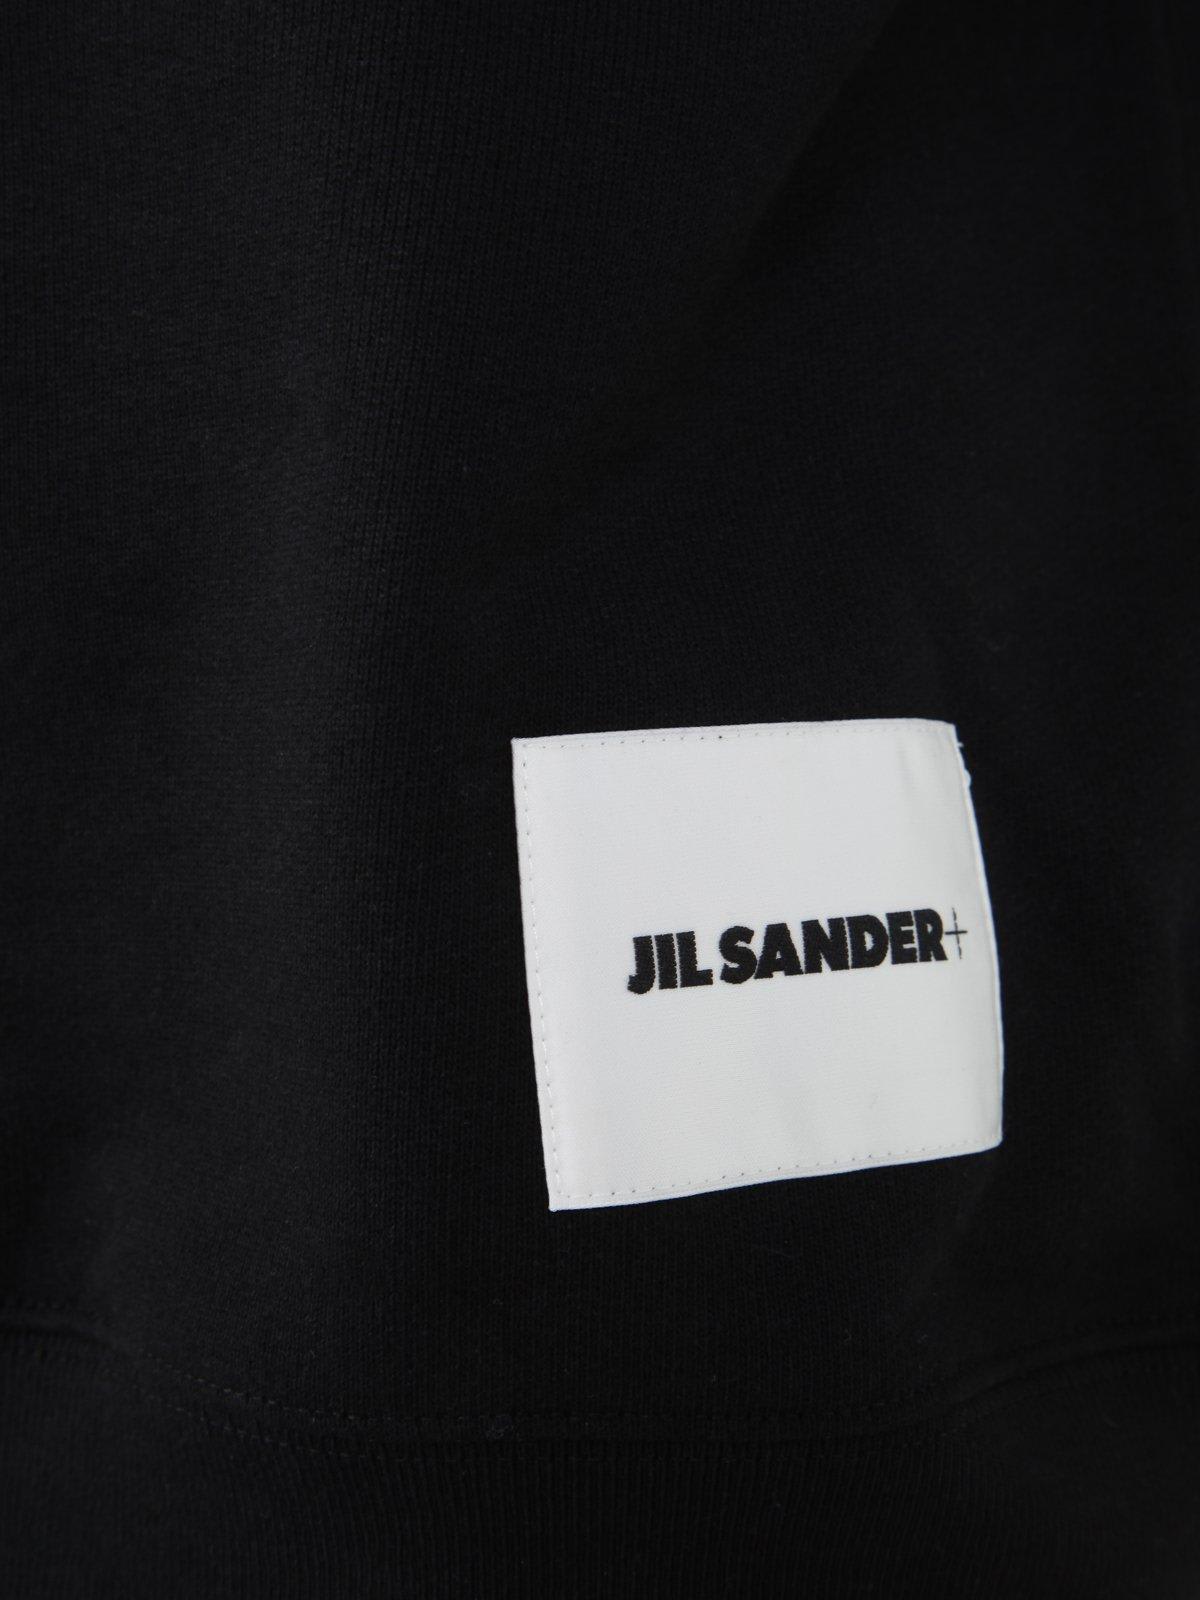 Shop Jil Sander #nome?